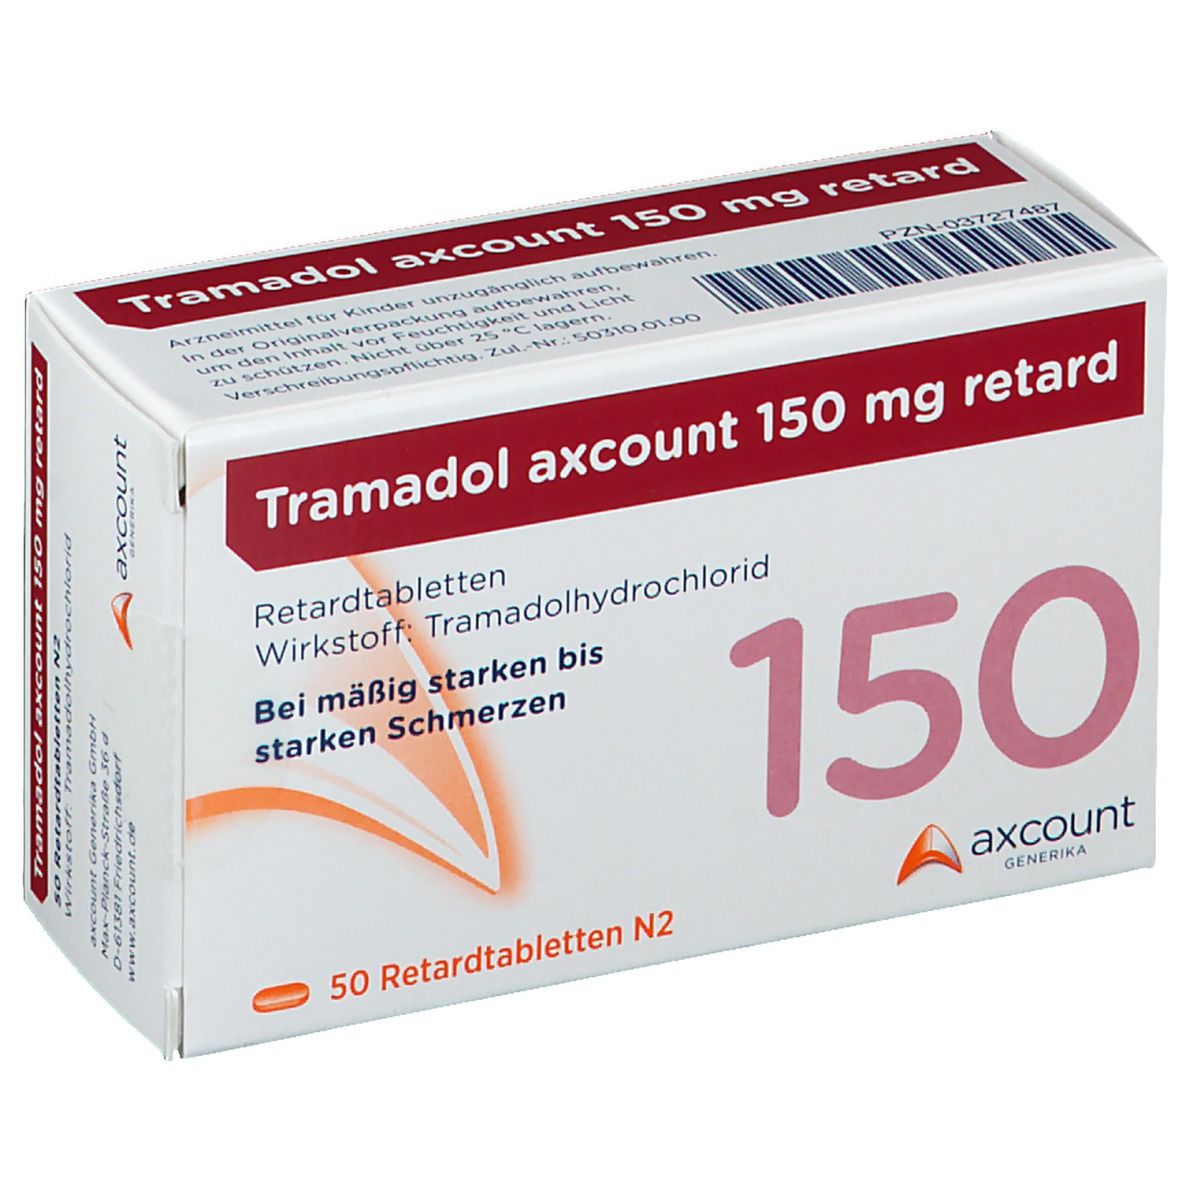 Tramadol axcount 150 mg retard